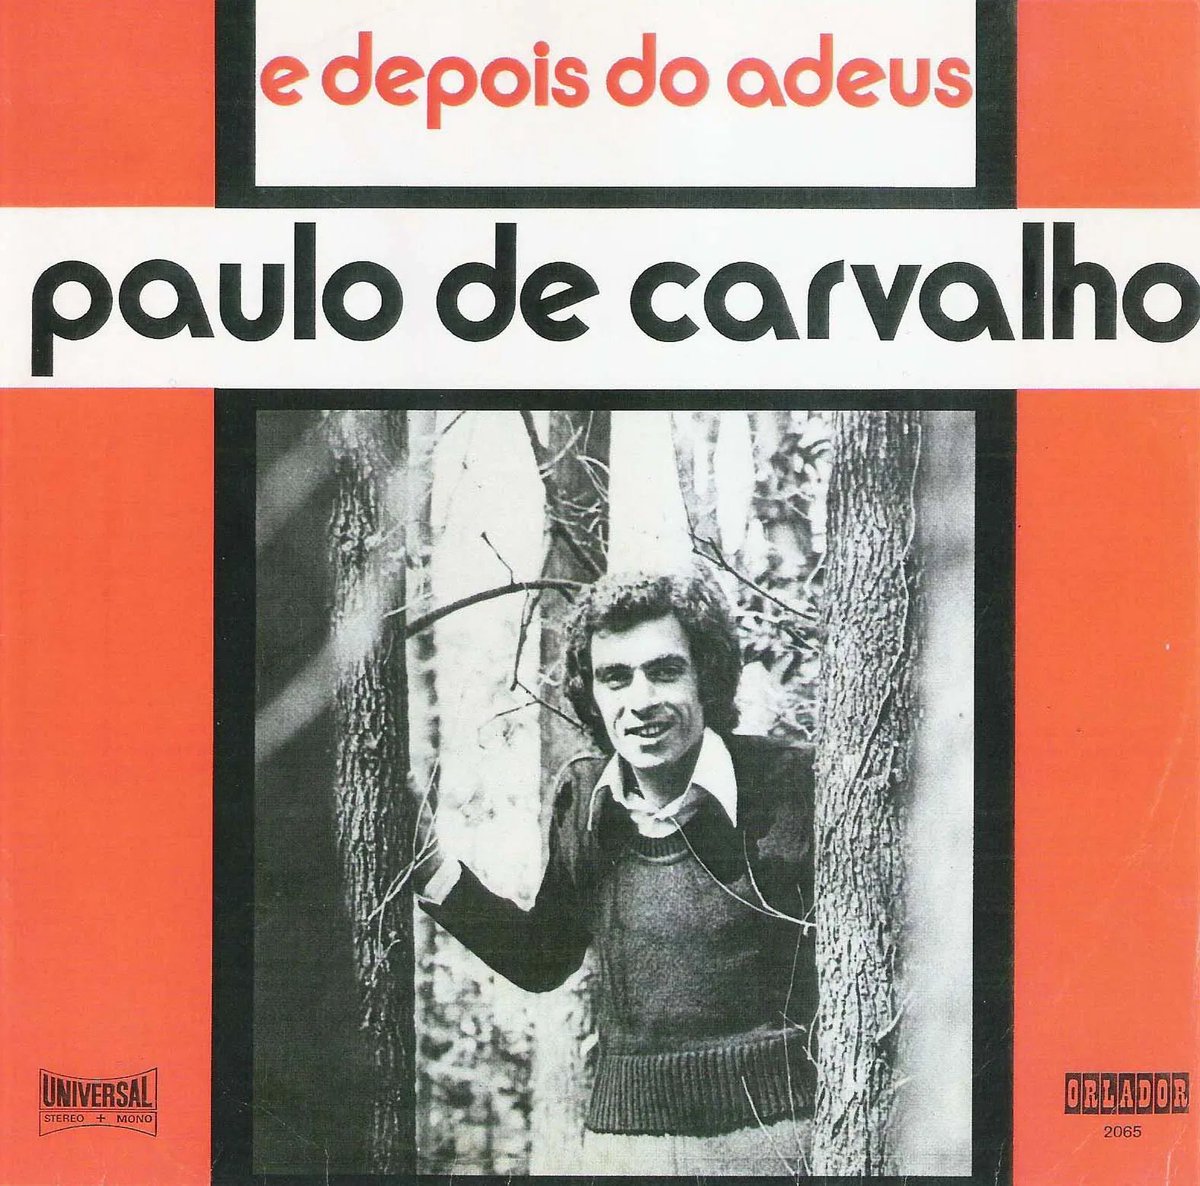 La noche del 24 se lanza la señal para tomar posiciones: la emisión de "E depois do Adeus" de Paulo de Carvalho a través de la radio. Justo después de la medianoche se emite "Grândola, Vila Morena" de Zeca Afonso para señalar que el golpe ha comenzado.